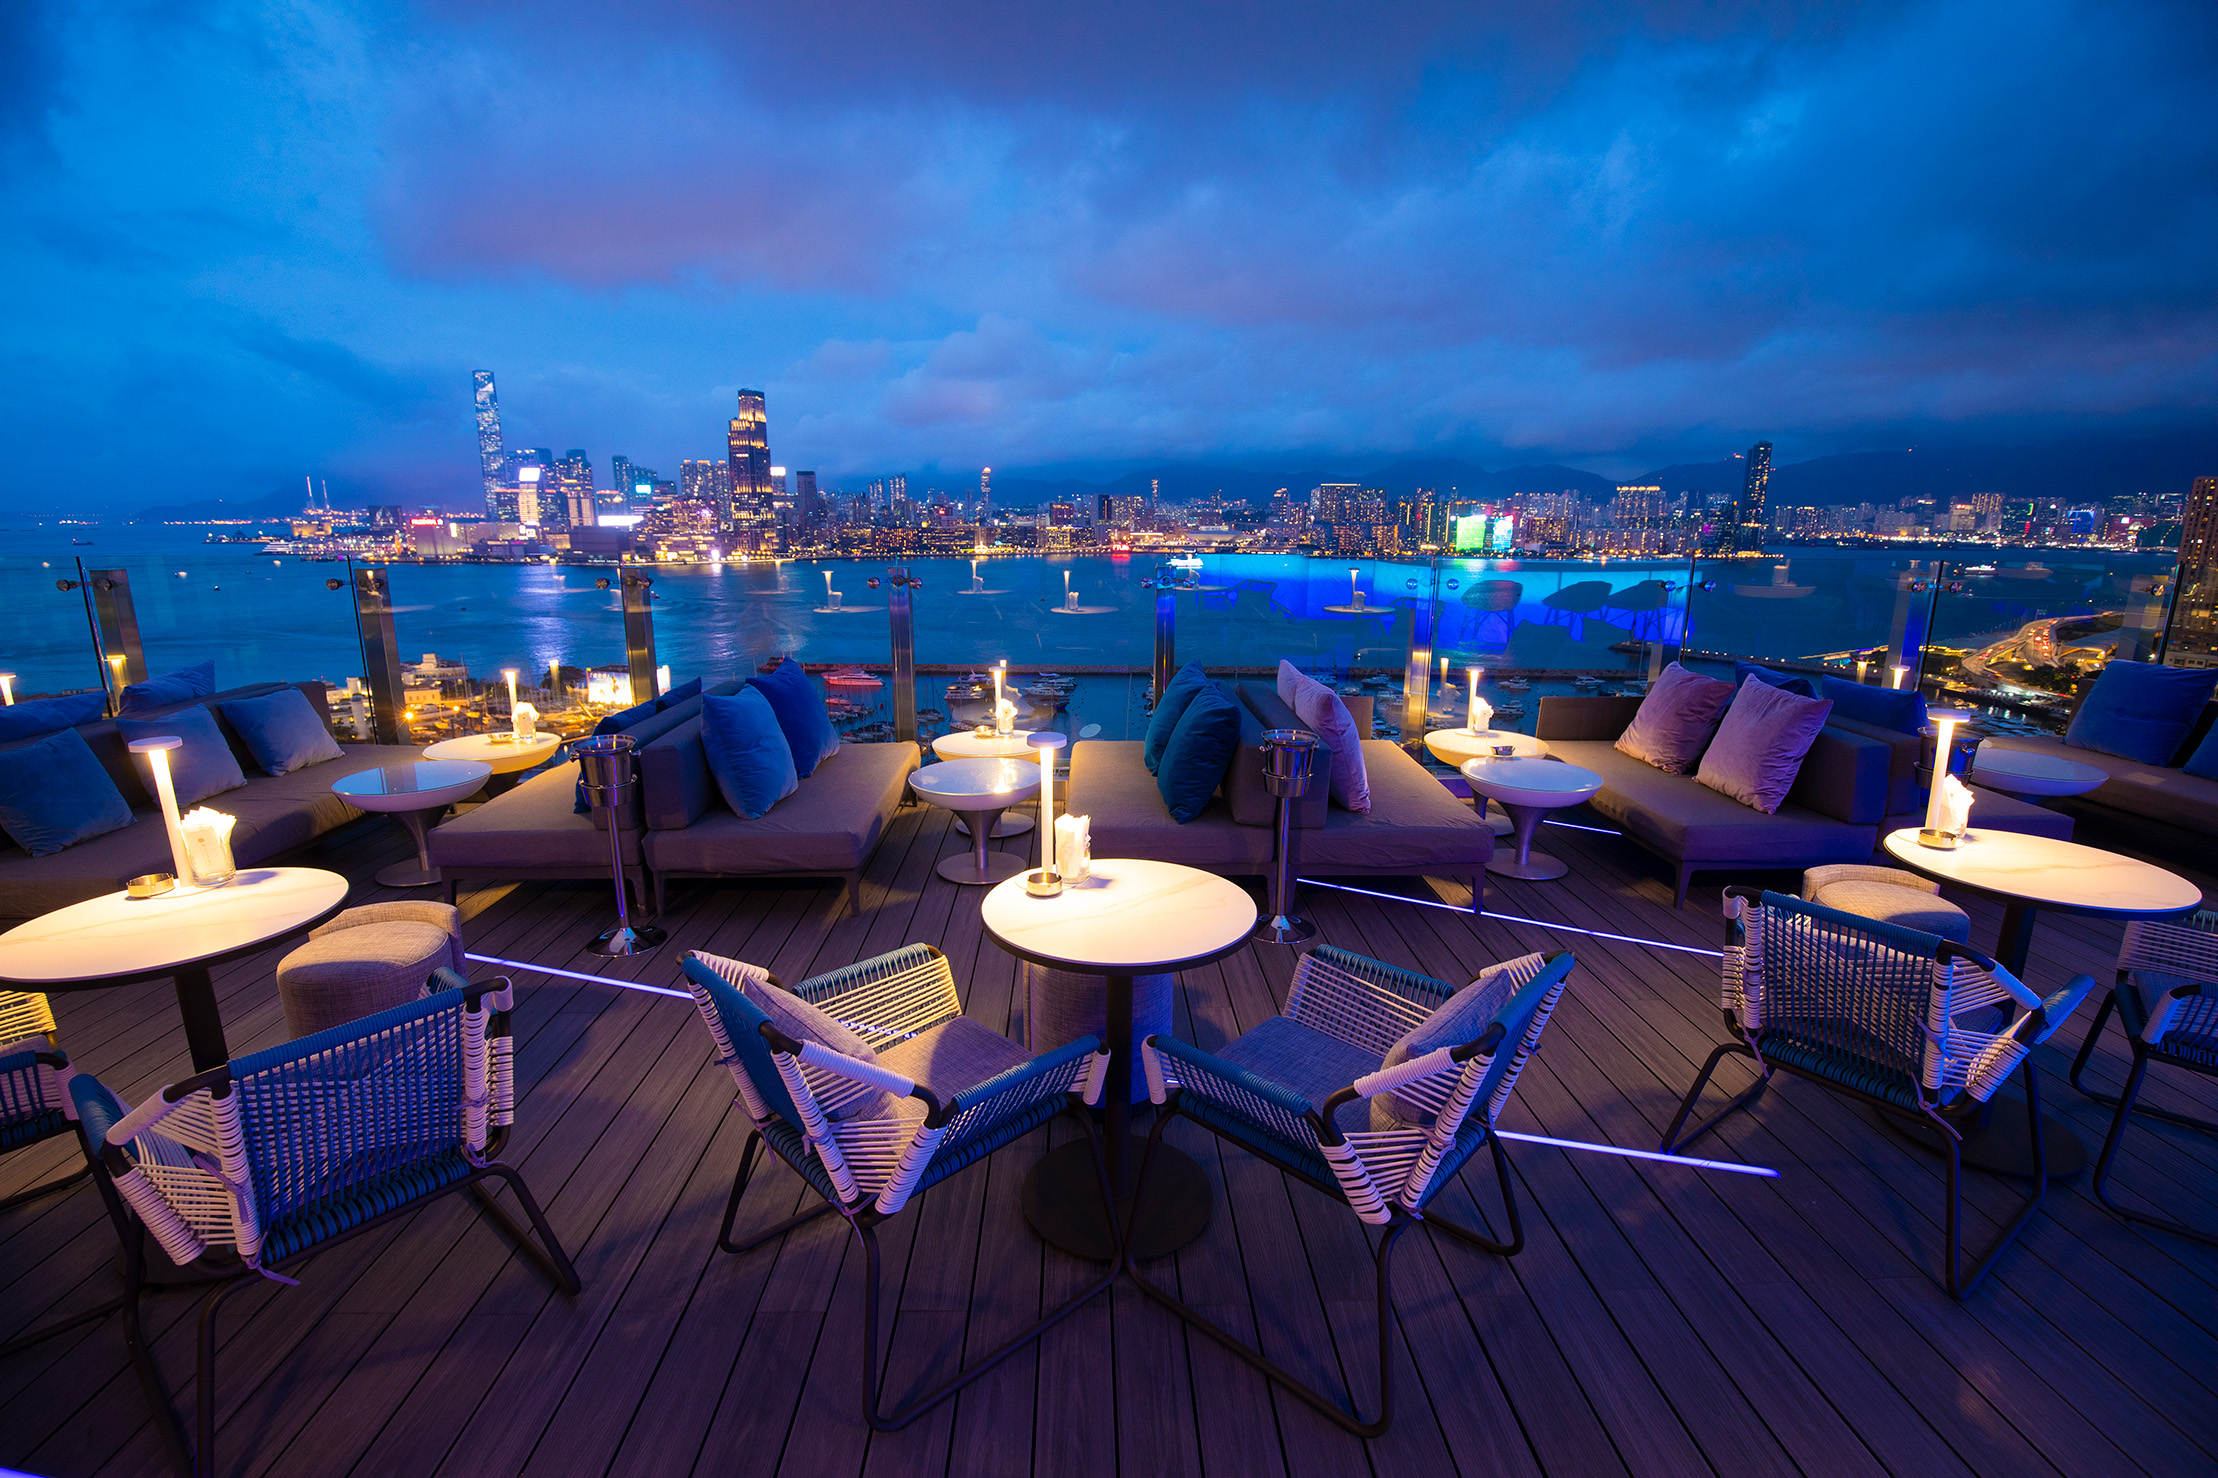 SKYE天台酒吧及餐厅可鸟瞰维多利亚港的壮丽美景.jpg